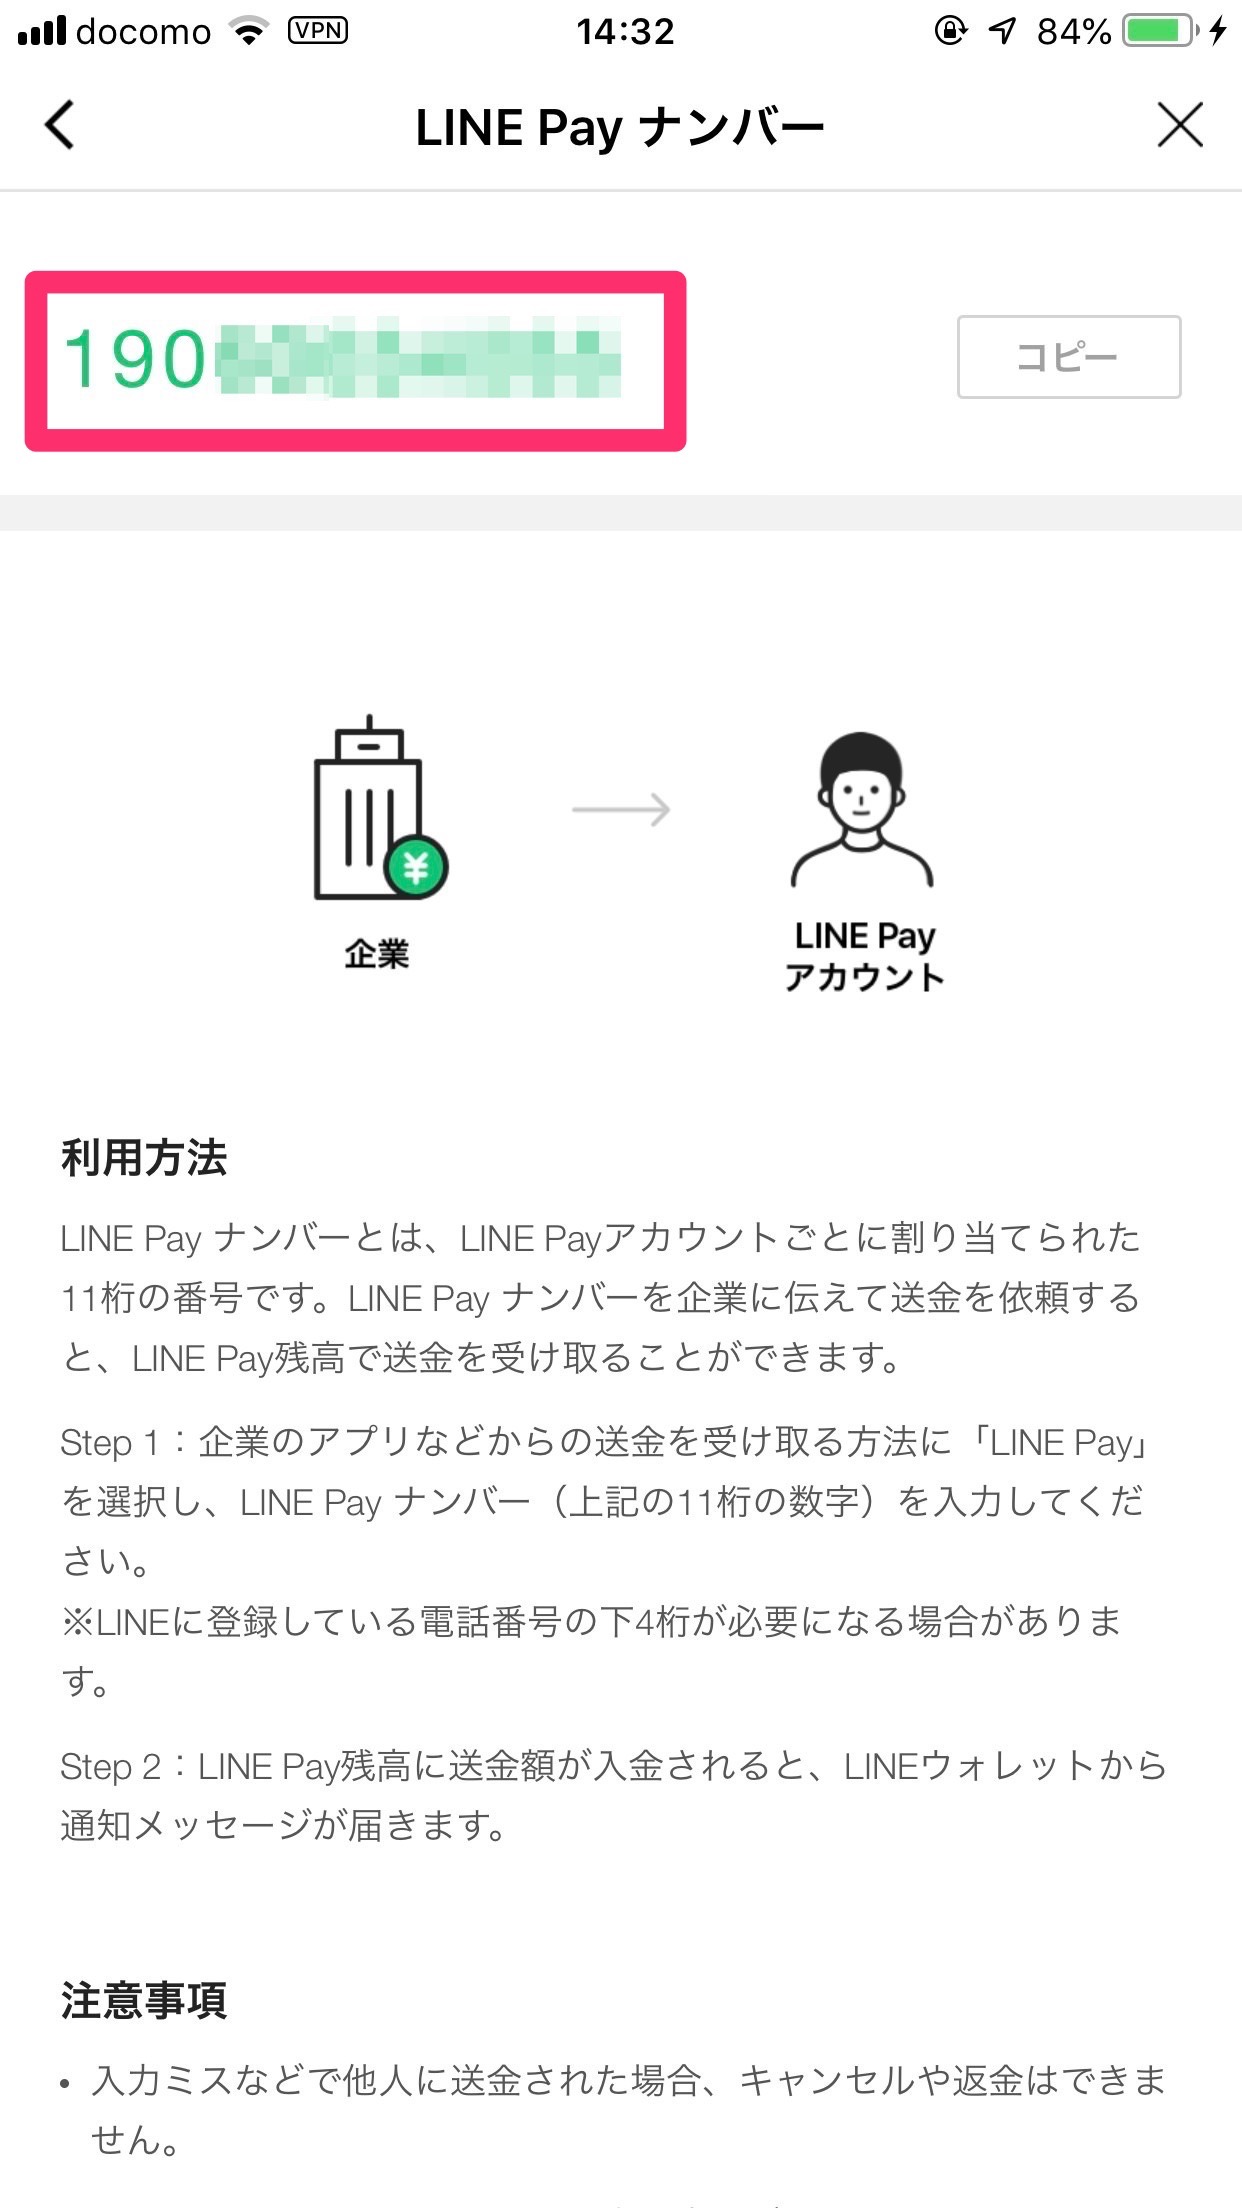 【LINE Pay】企業→個人の送金できる「LINE Pay かんたん送金サービス」開始